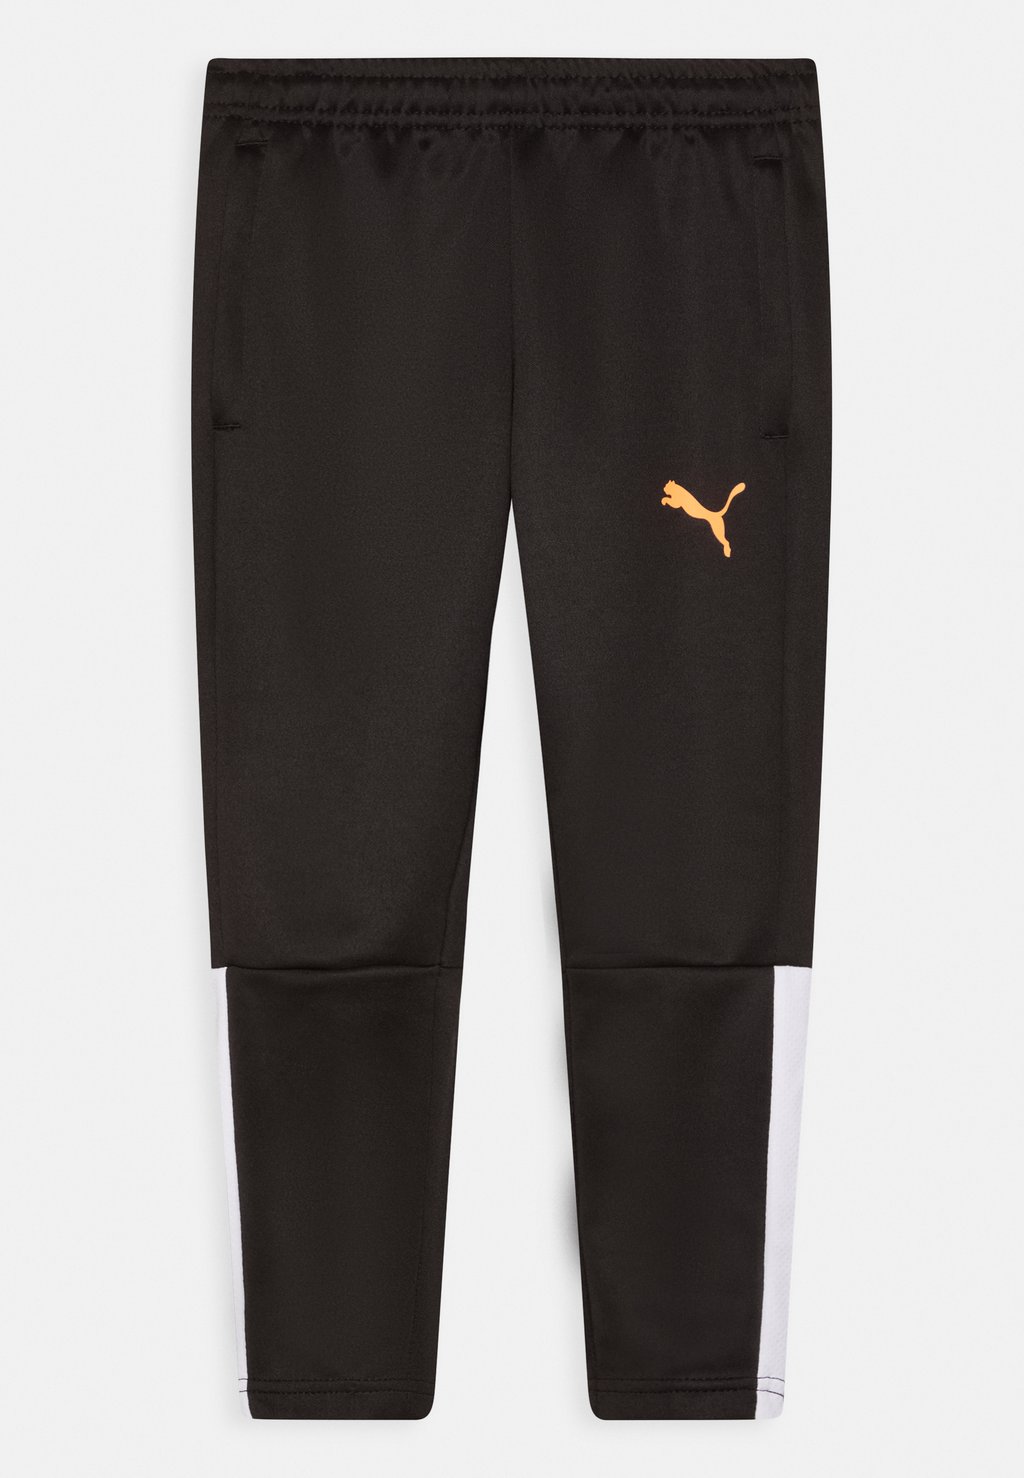 Спортивные брюки Teamliga Training Pants Jr Unisex Puma, цвет puma black neon citrus